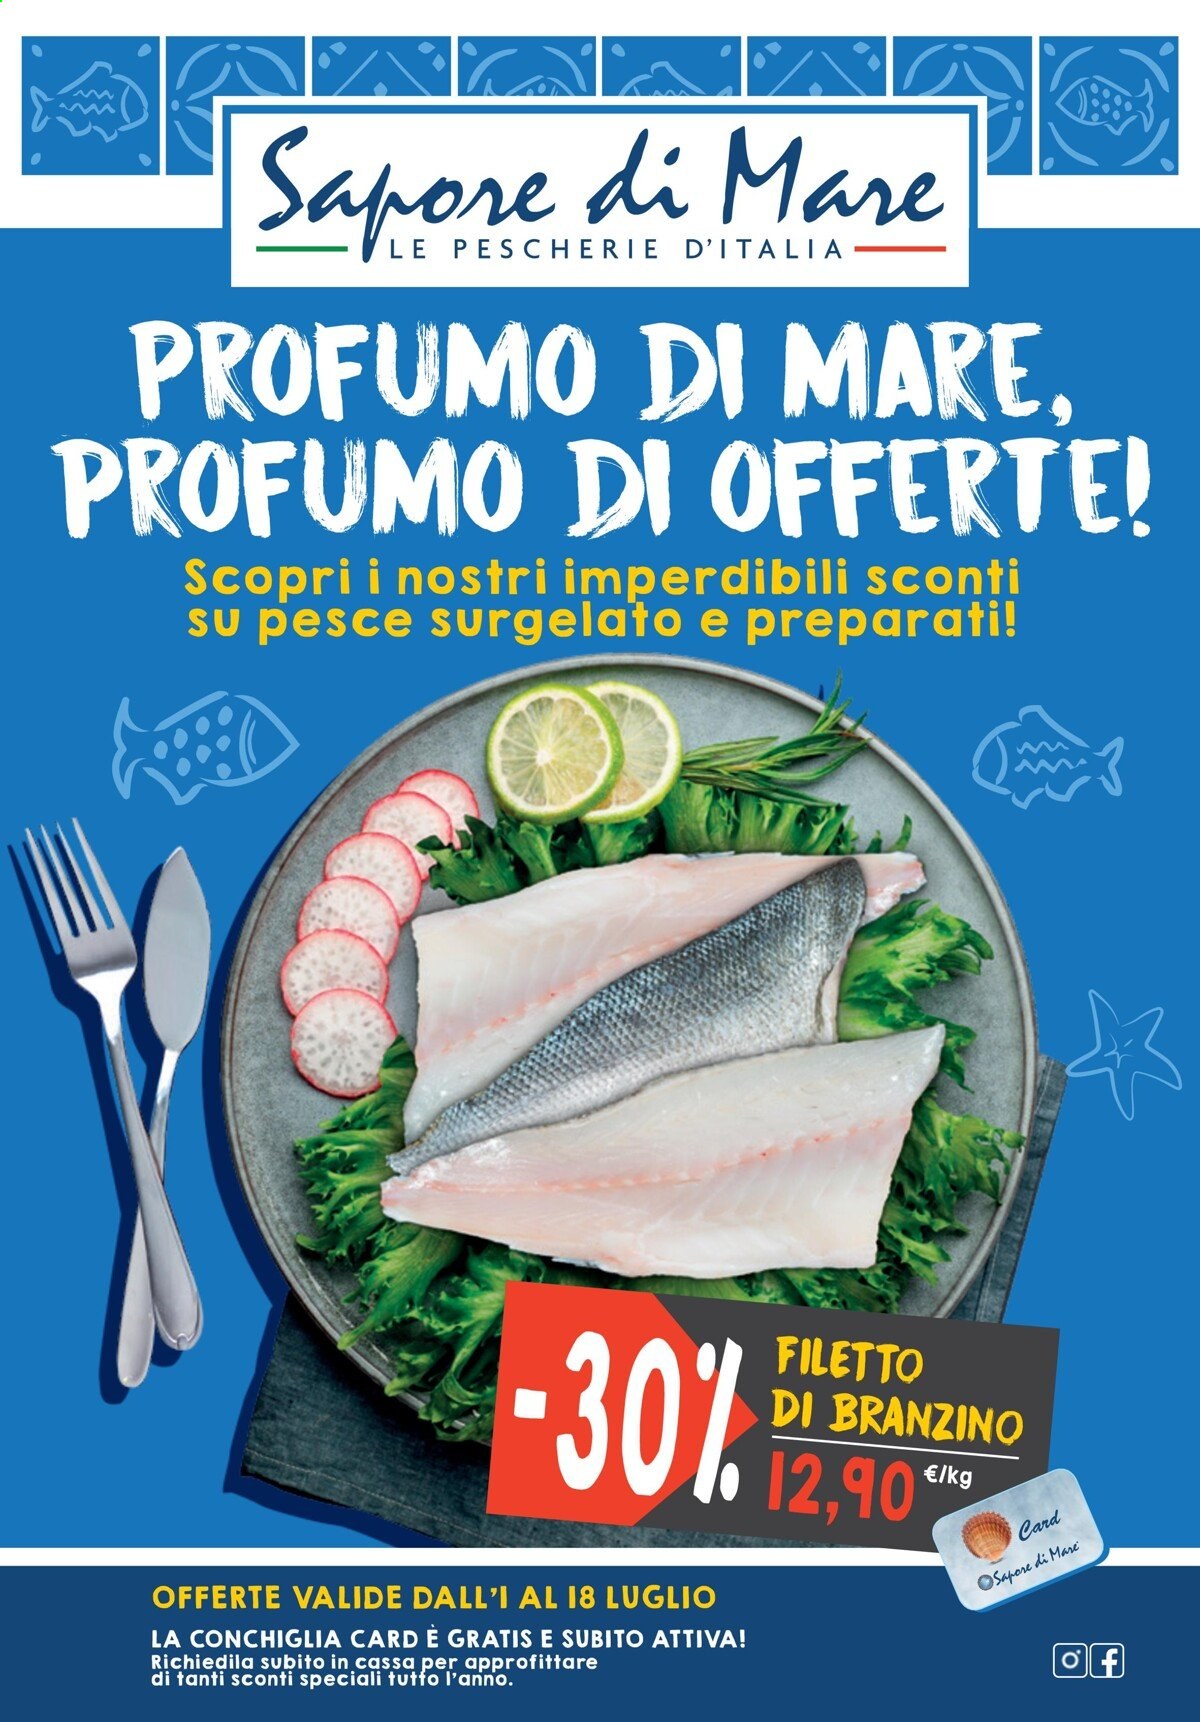 thumbnail - Volantino Sapore di Mare - 1/7/2021 - 18/7/2021 - Prodotti in offerta - branzino, spigola, pesce, filetti di branzino. Pagina 1.